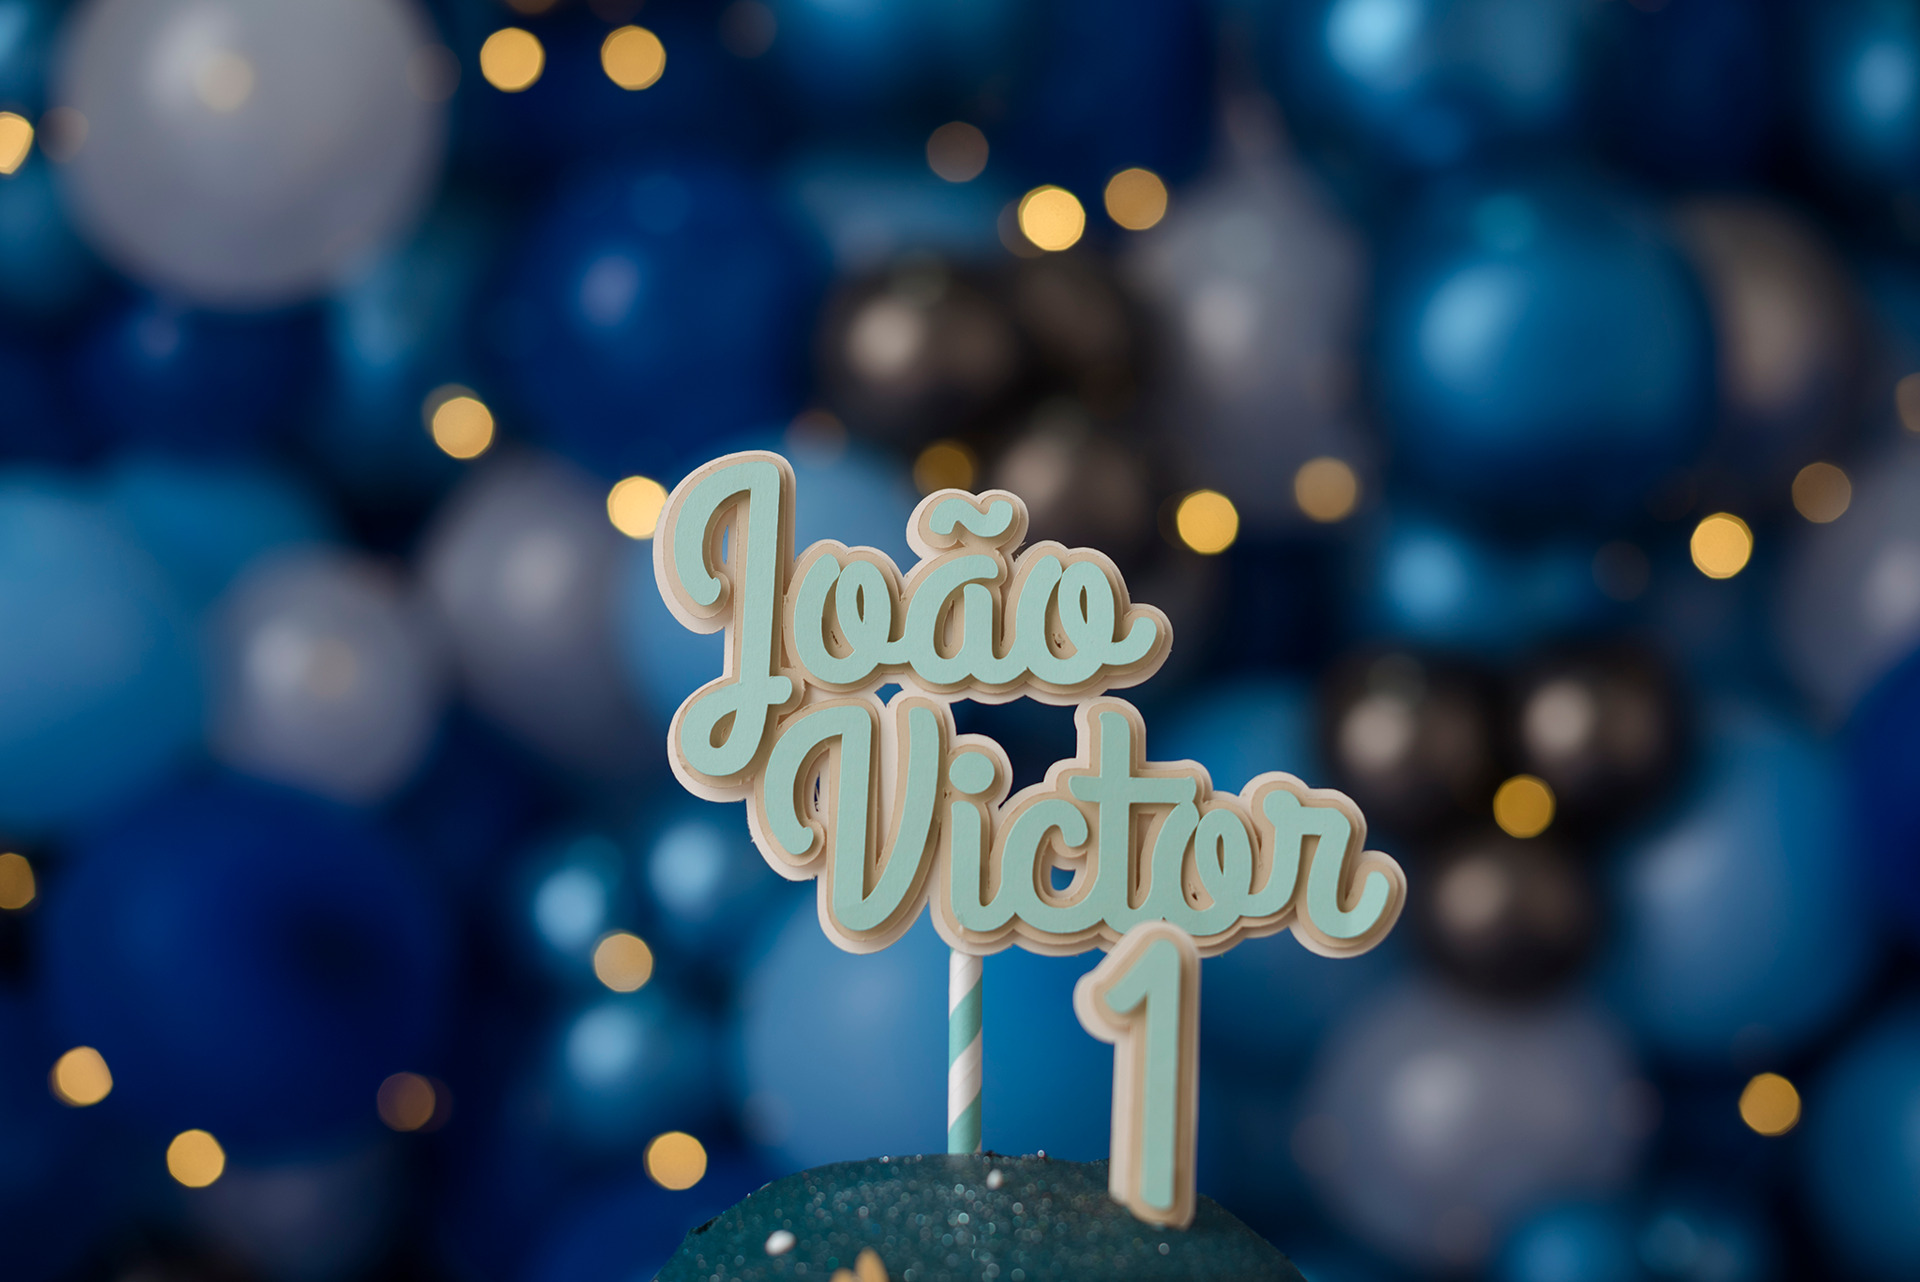 João victor |  Cake Smash